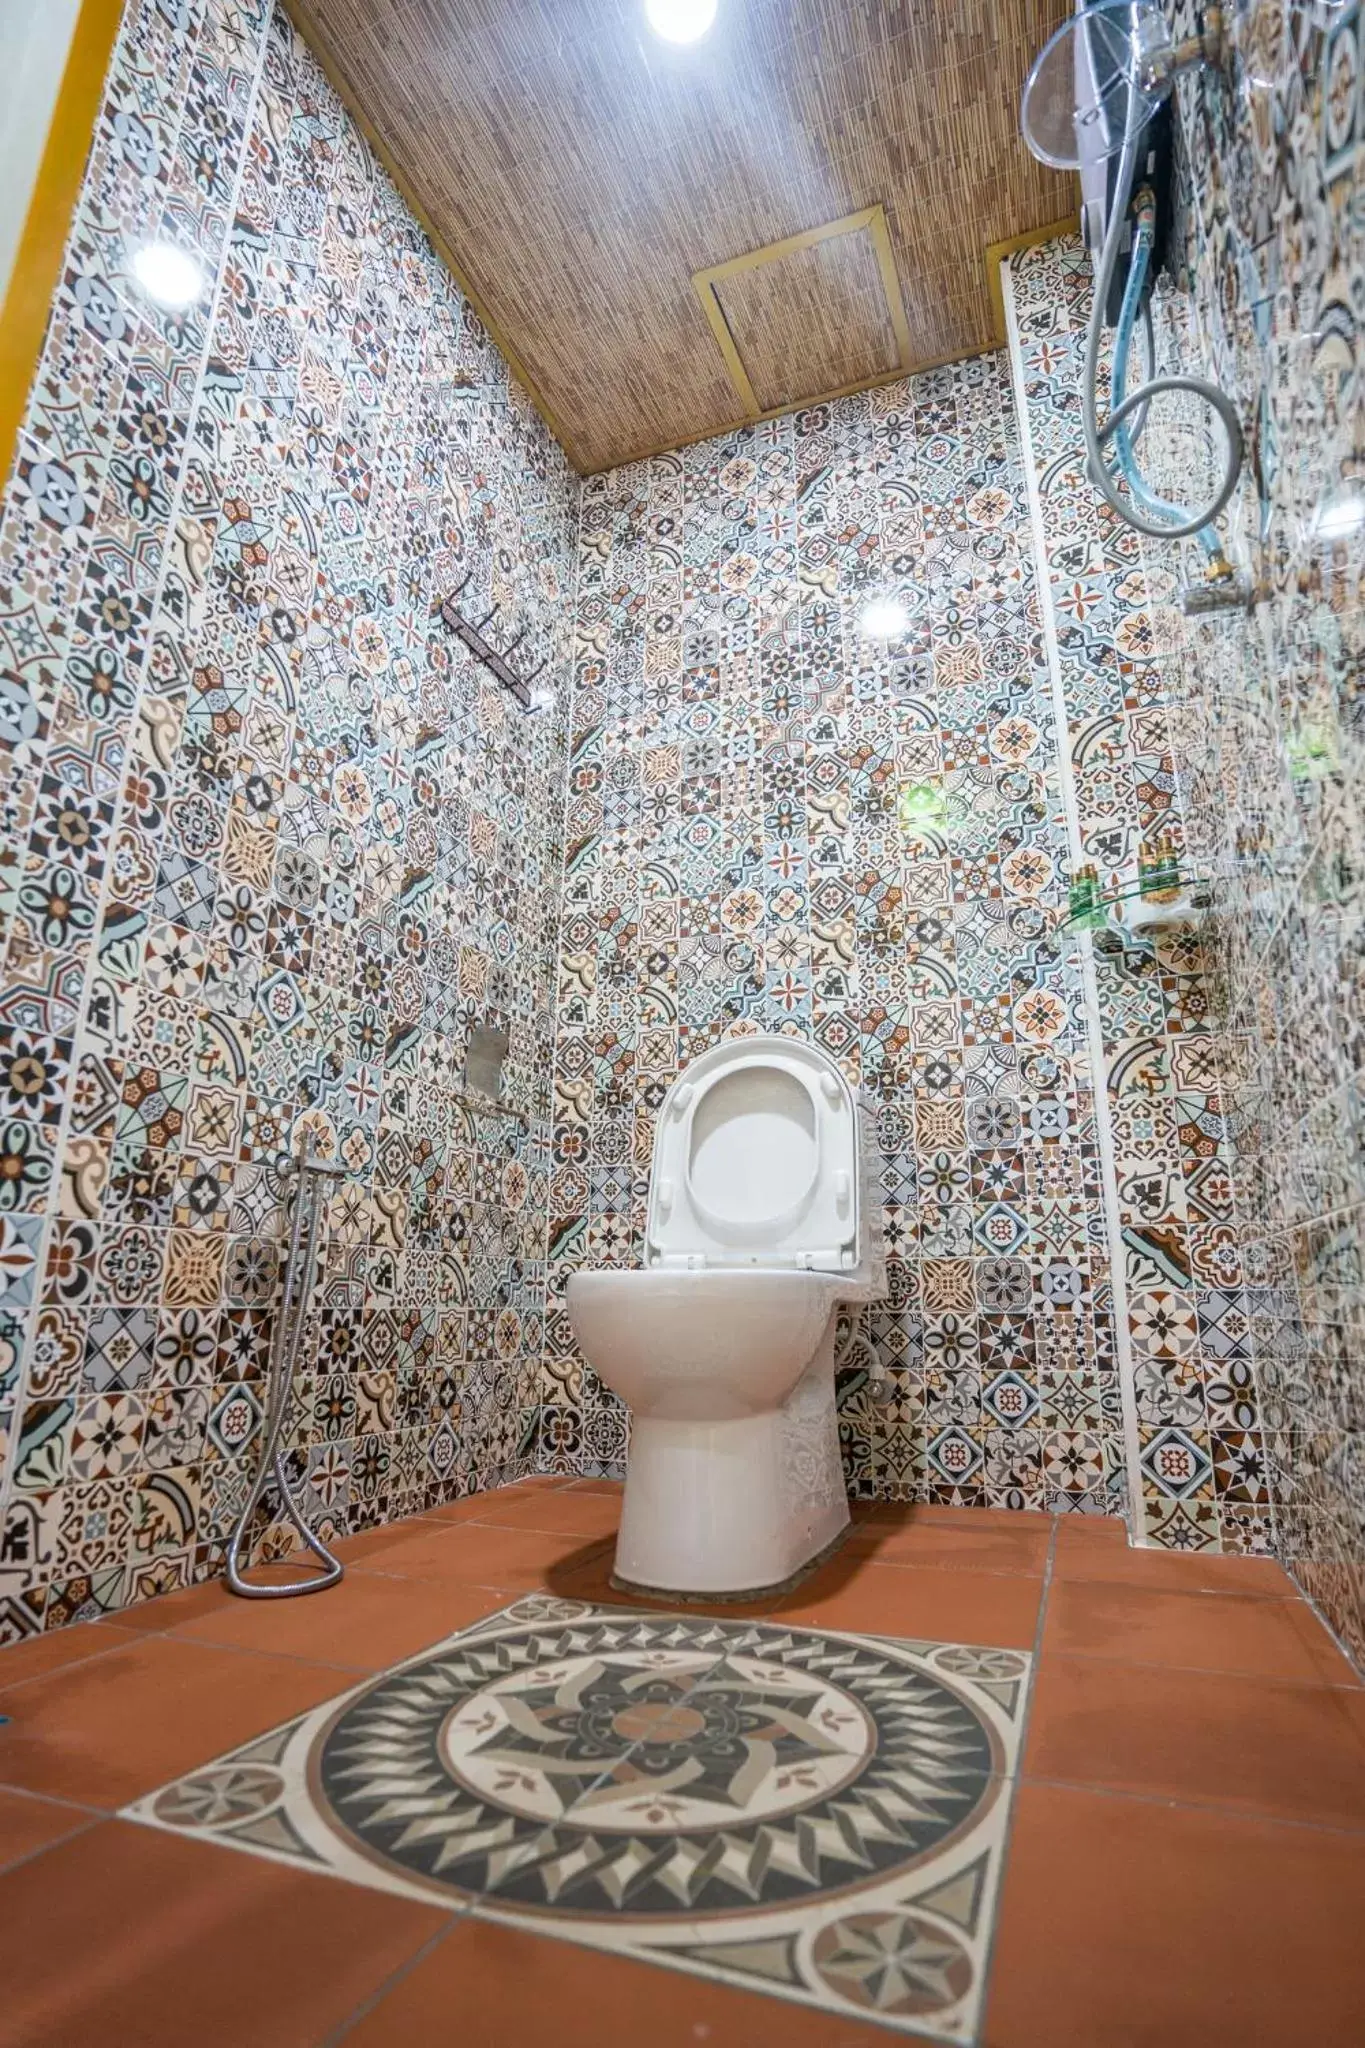 Toilet, Bathroom in Lost Paradise Resort